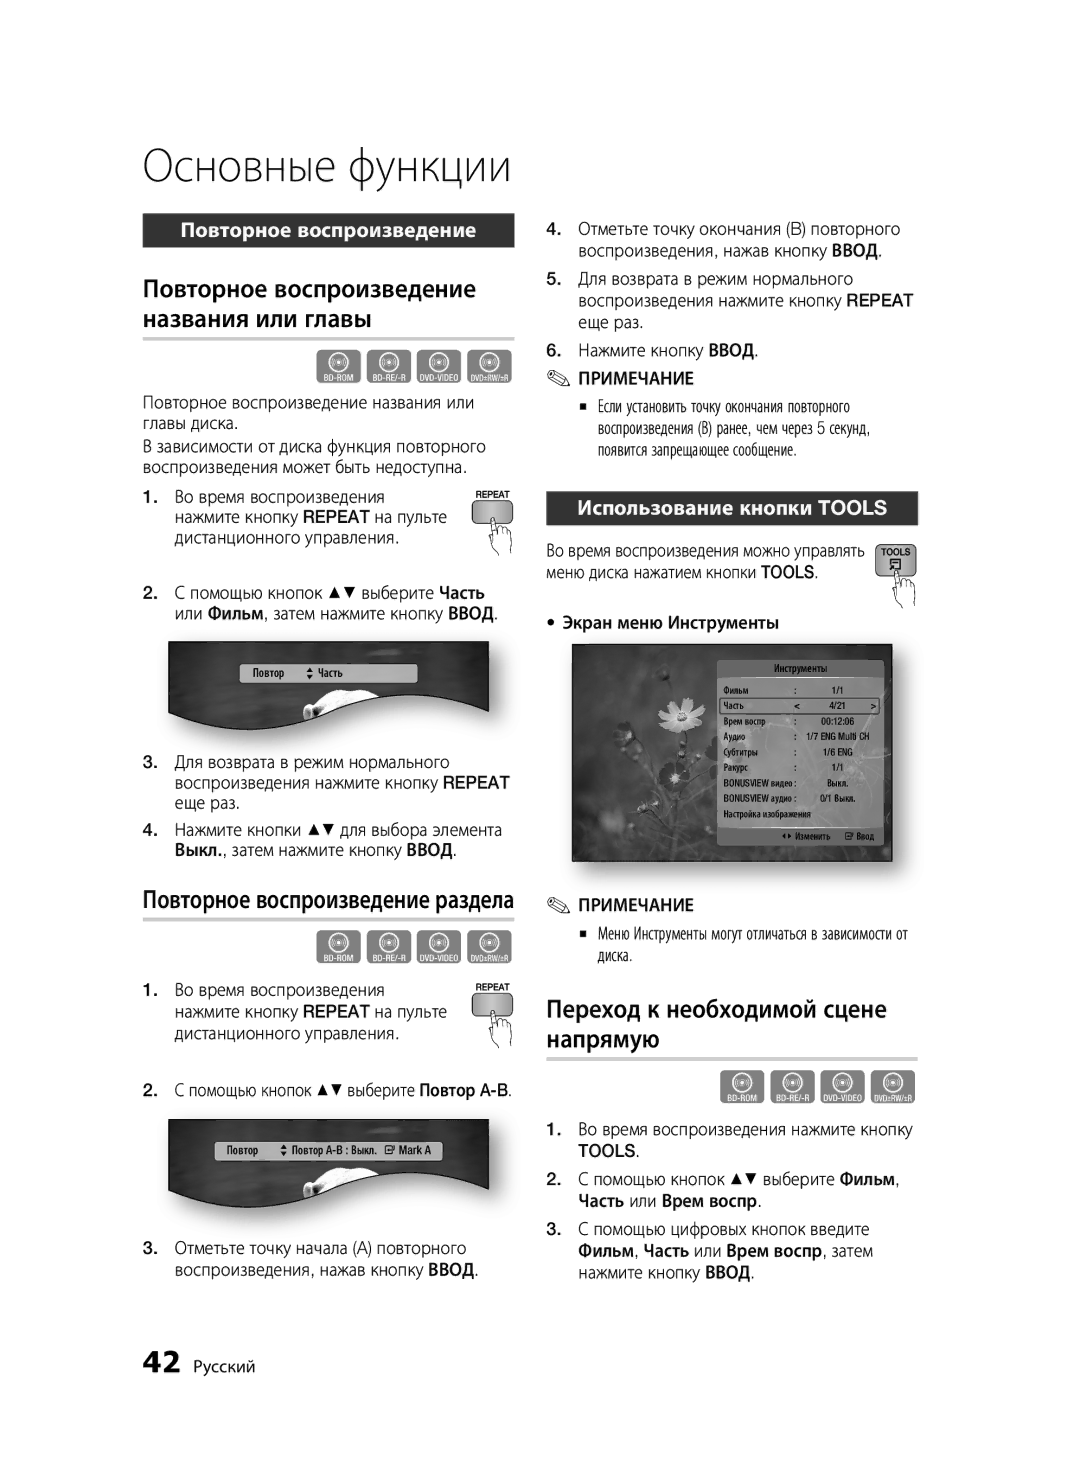 Samsung BD-C5500/XER manual Повторное воспроизведение названия или главы, Переход к необходимой сцене напрямую, Tools 